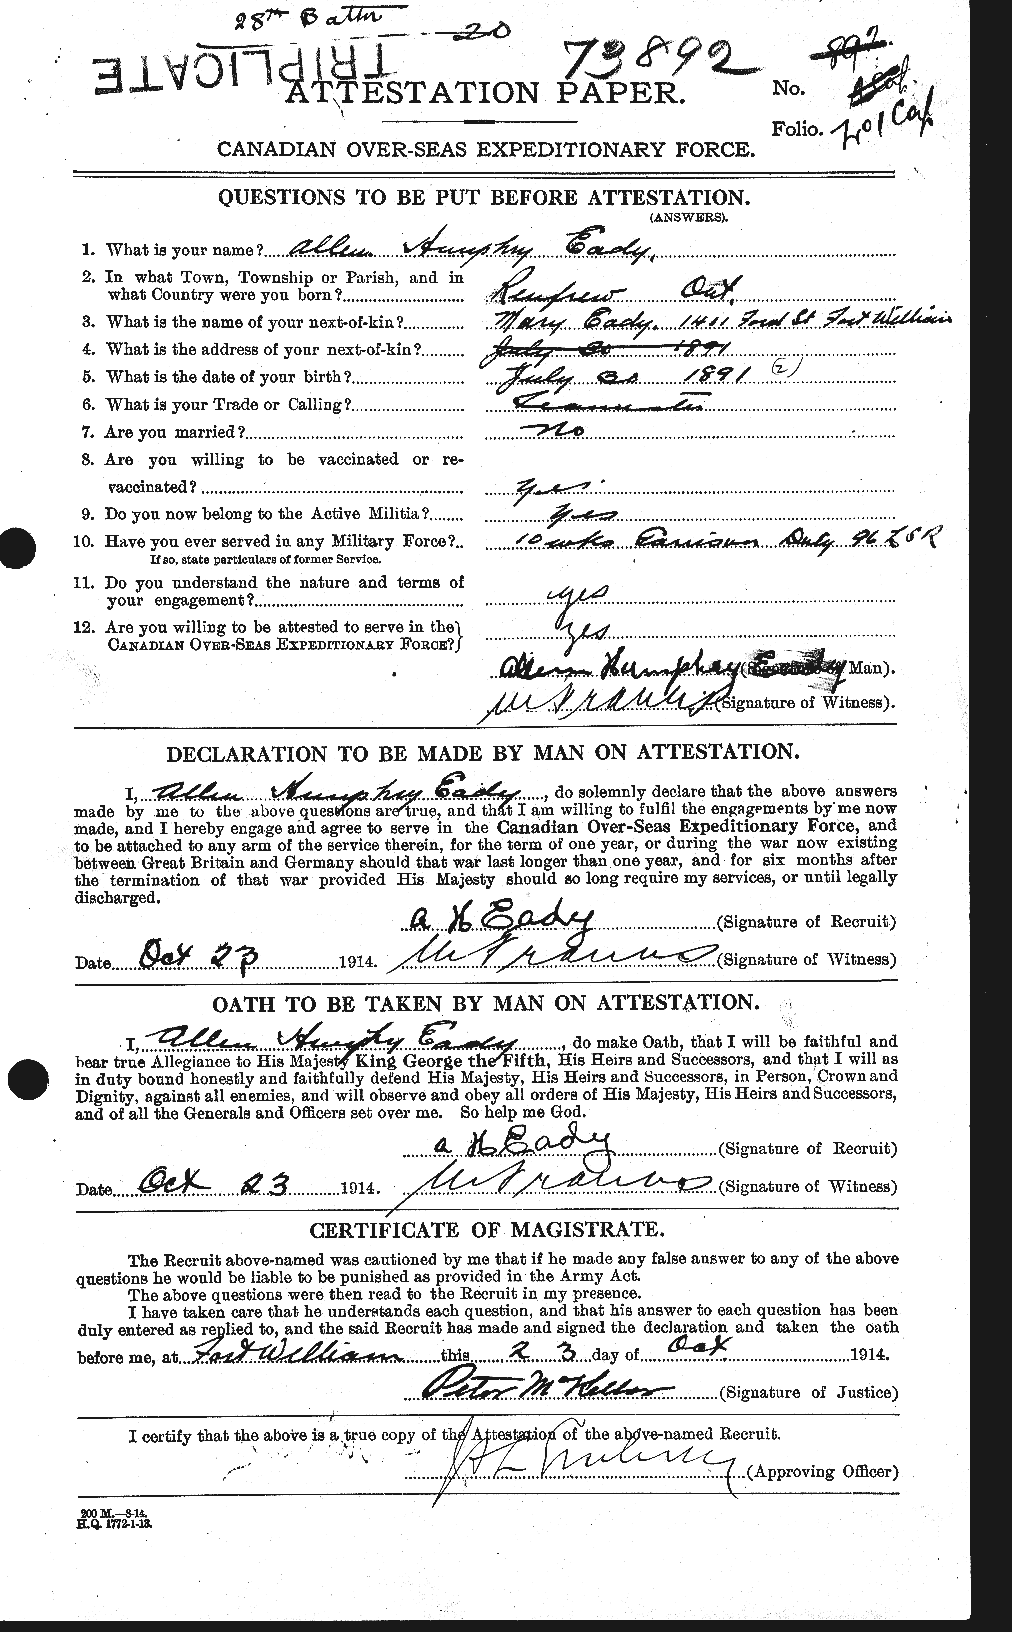 Dossiers du Personnel de la Première Guerre mondiale - CEC 308075a